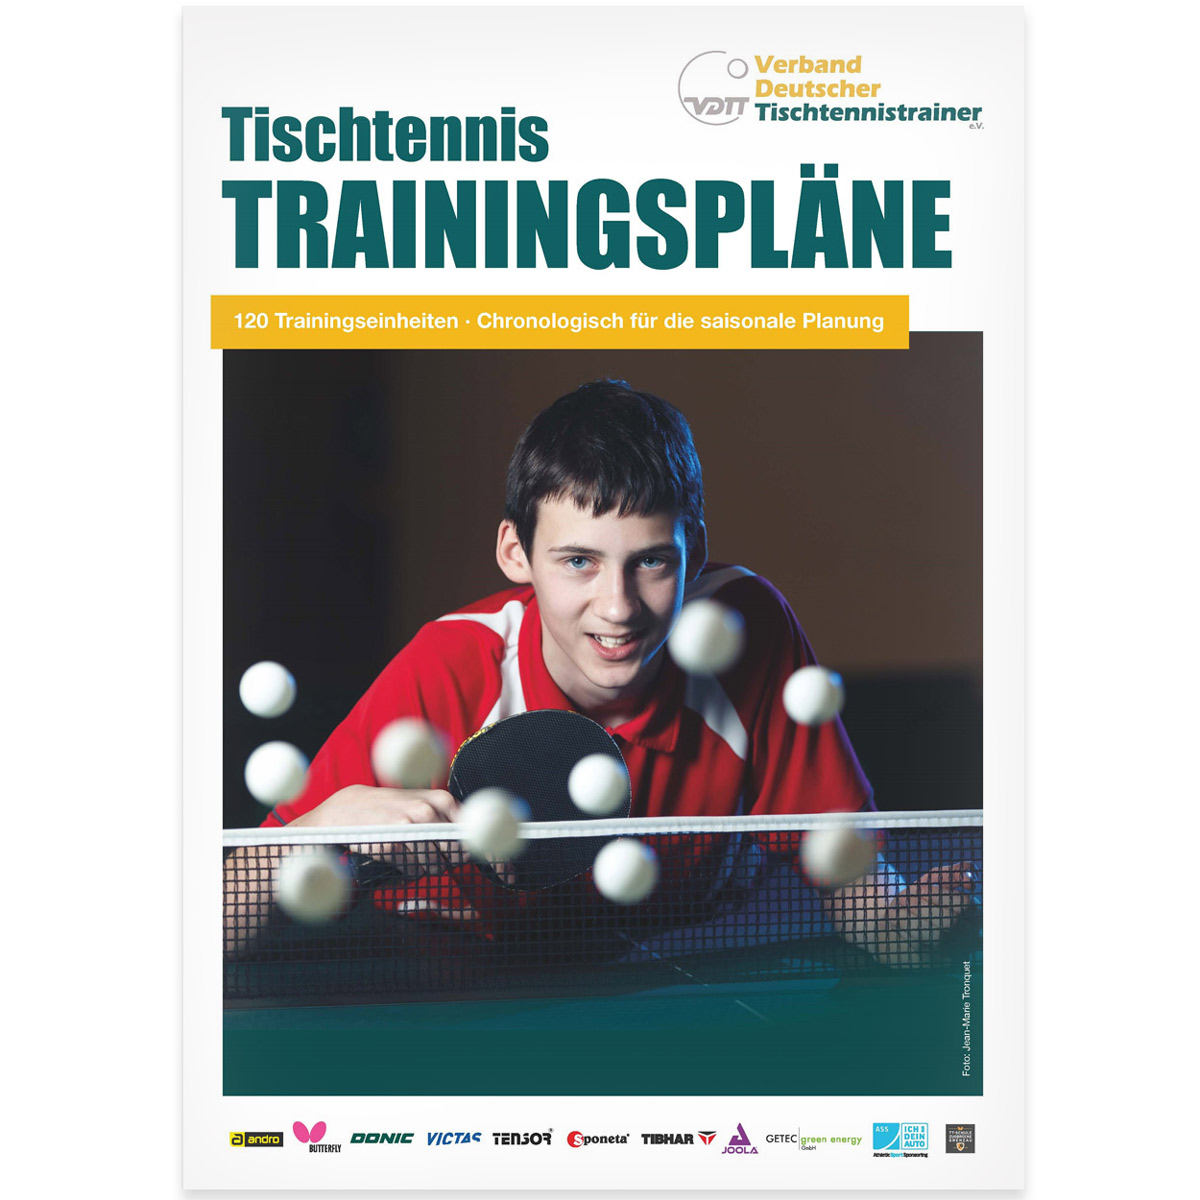 Book: Tischtennis Trainingspläne